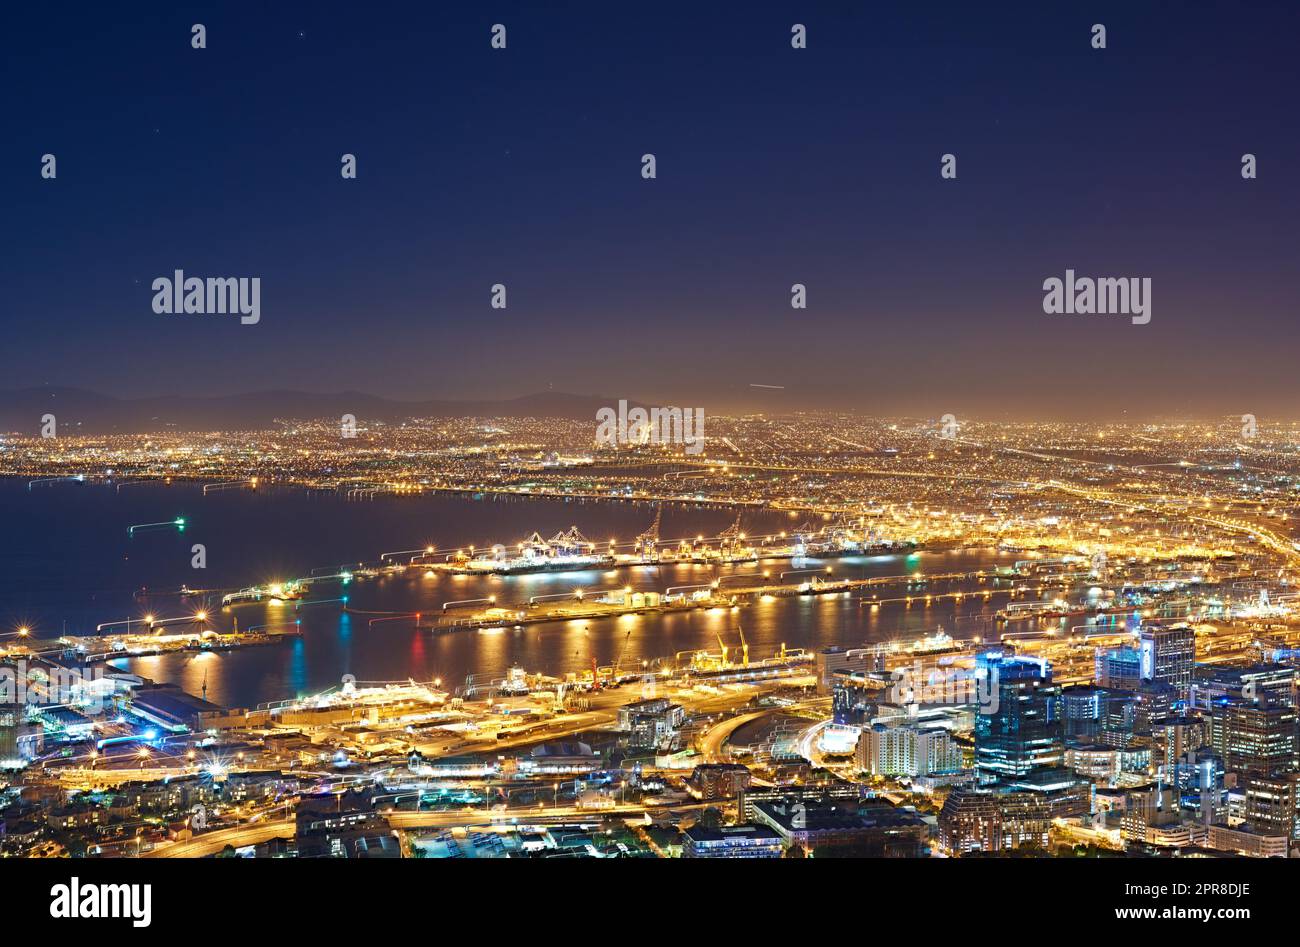 Vista aerea del paesaggio urbano notturno di città del Capo, Sud Africa. Ampio angolo di splendida vista panoramica delle luci della città di sera. Vista ad alto angolo dalla collina segnaletica al buio di una città costiera. Foto Stock